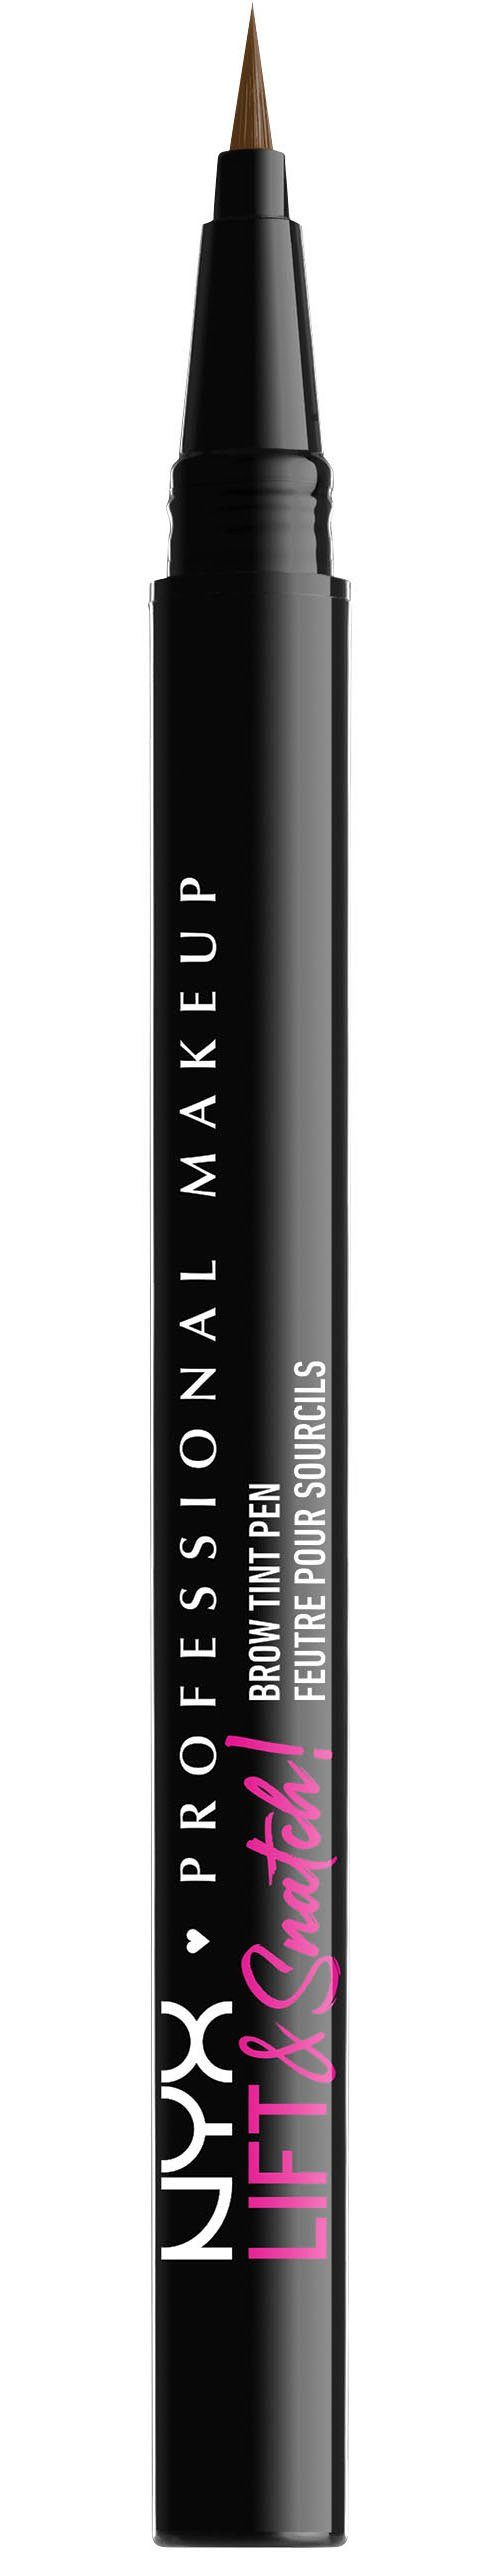 NYX Augenbrauen-Stift Professional Makeup Lift & Snatch Brow Tint Pen brunette